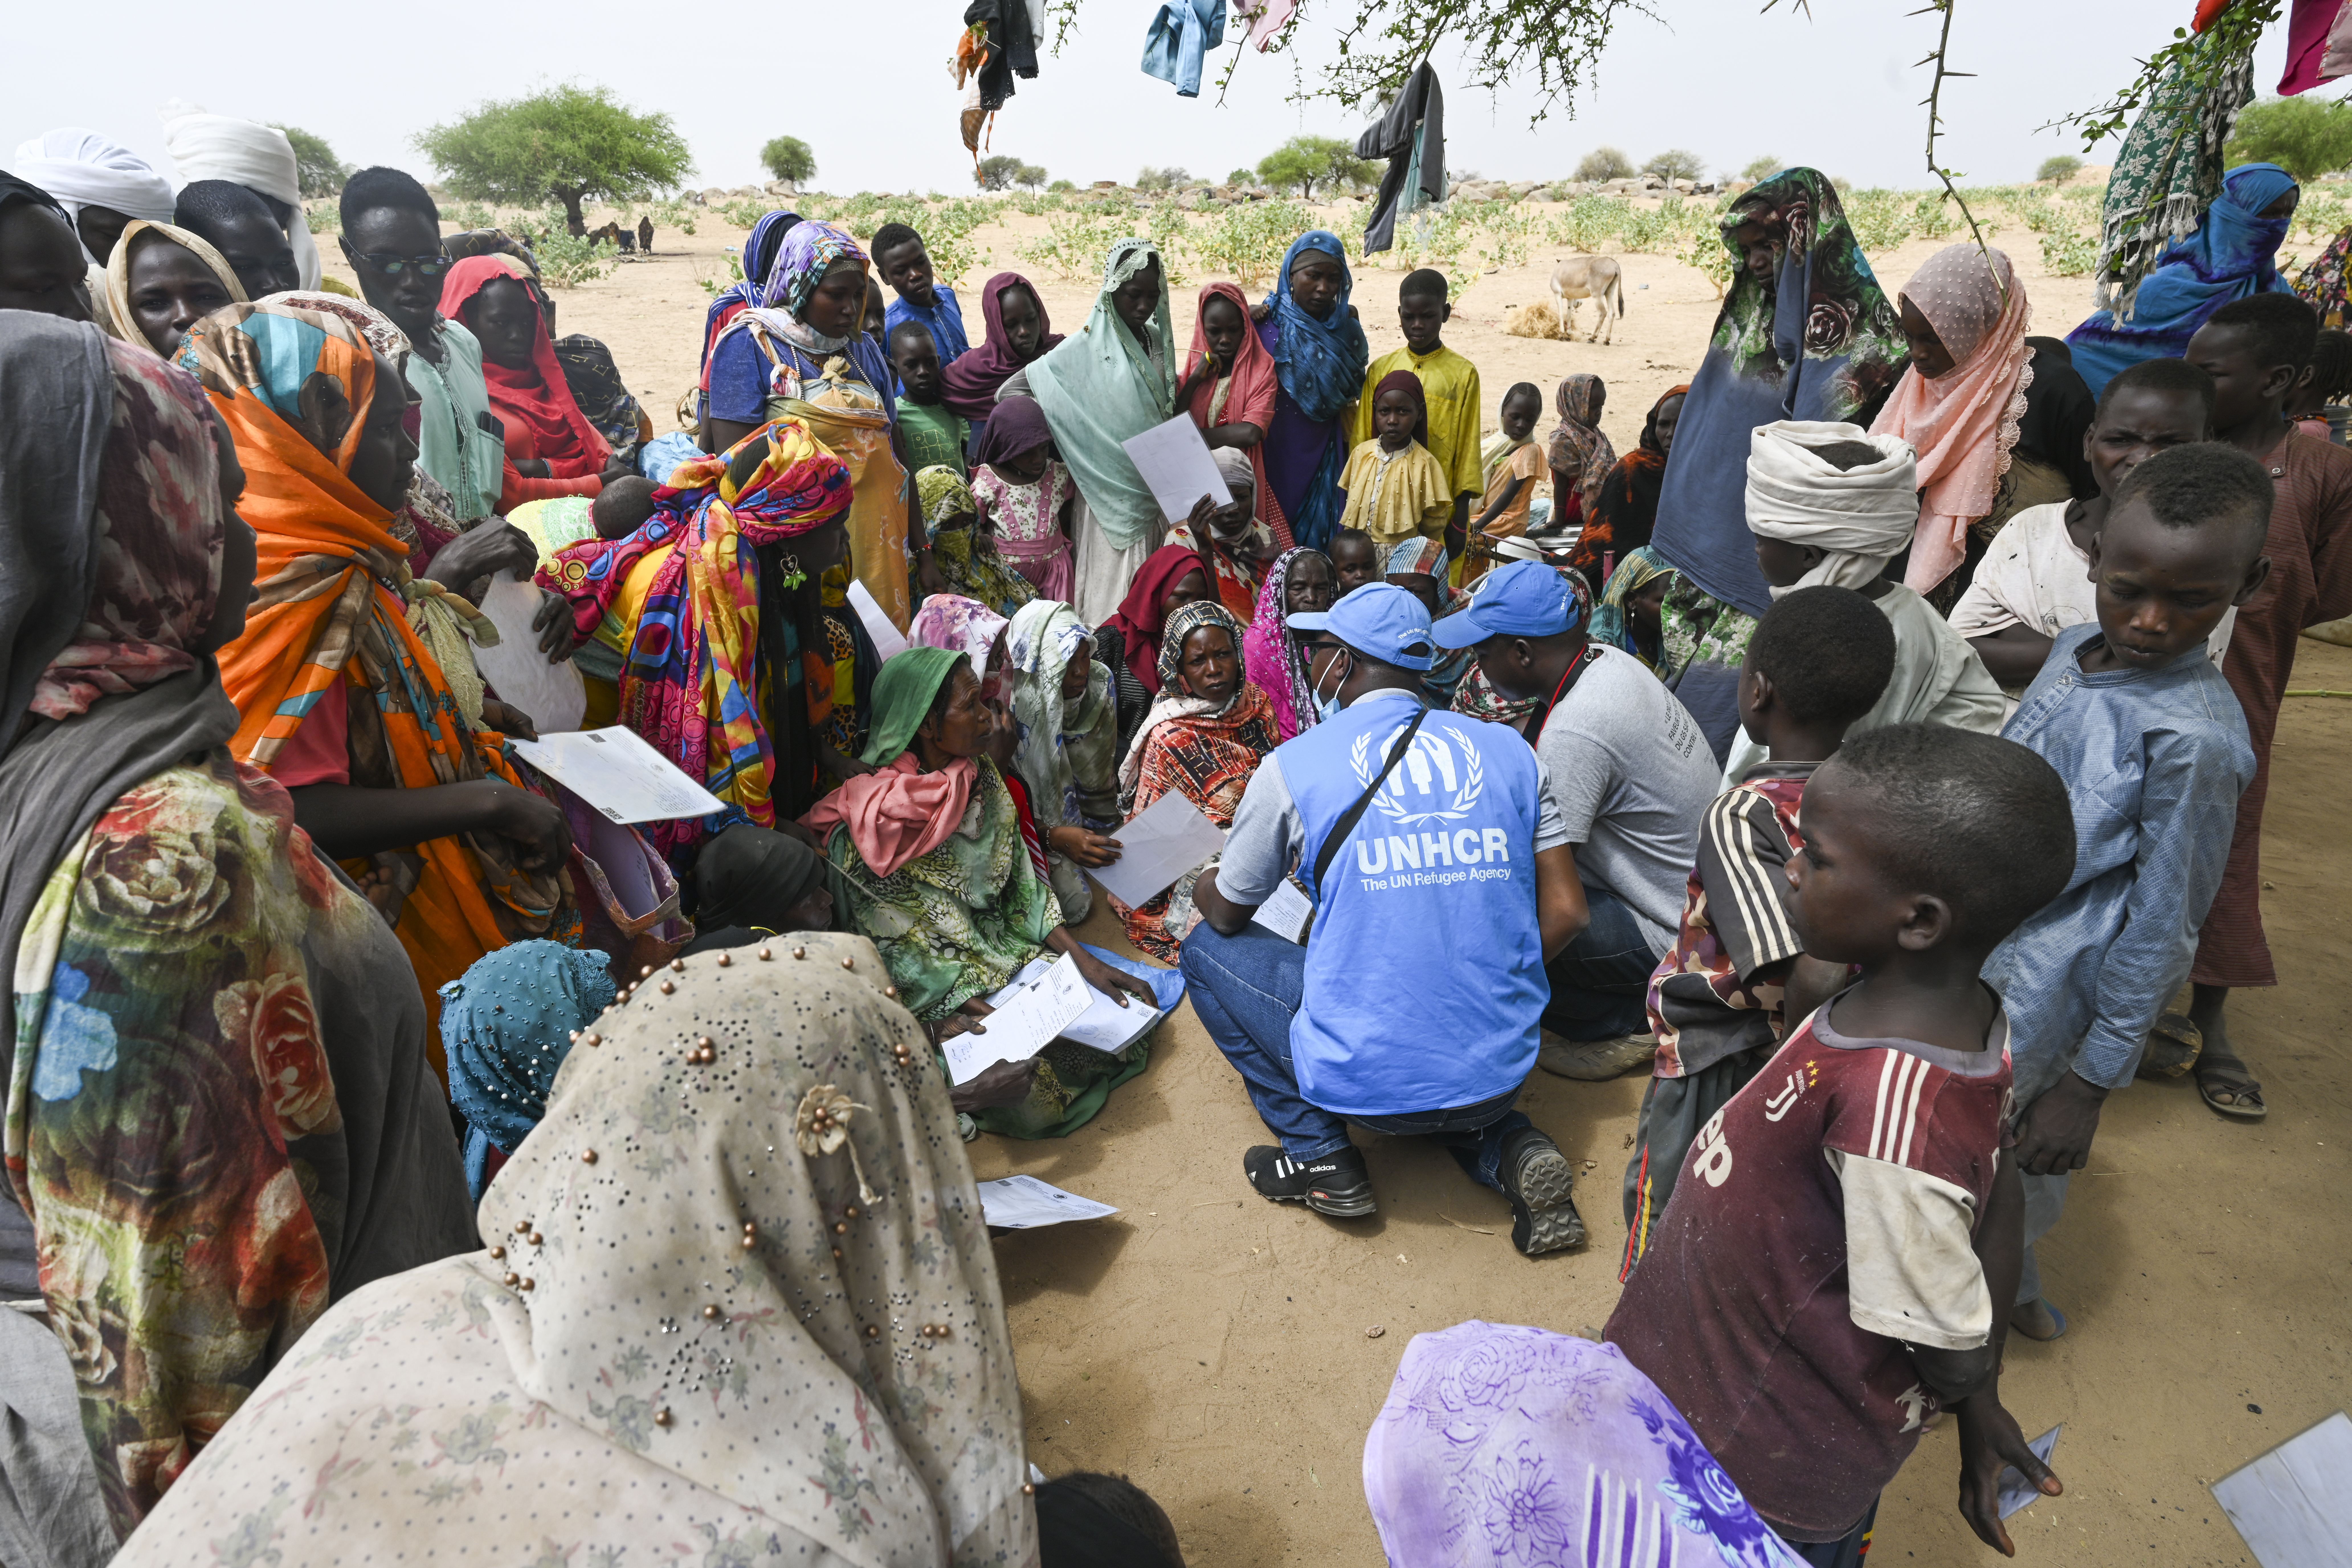 ACNUR se moviliza para ayudar a las personas refugiadas y desplazadas por la crisis en Sudán